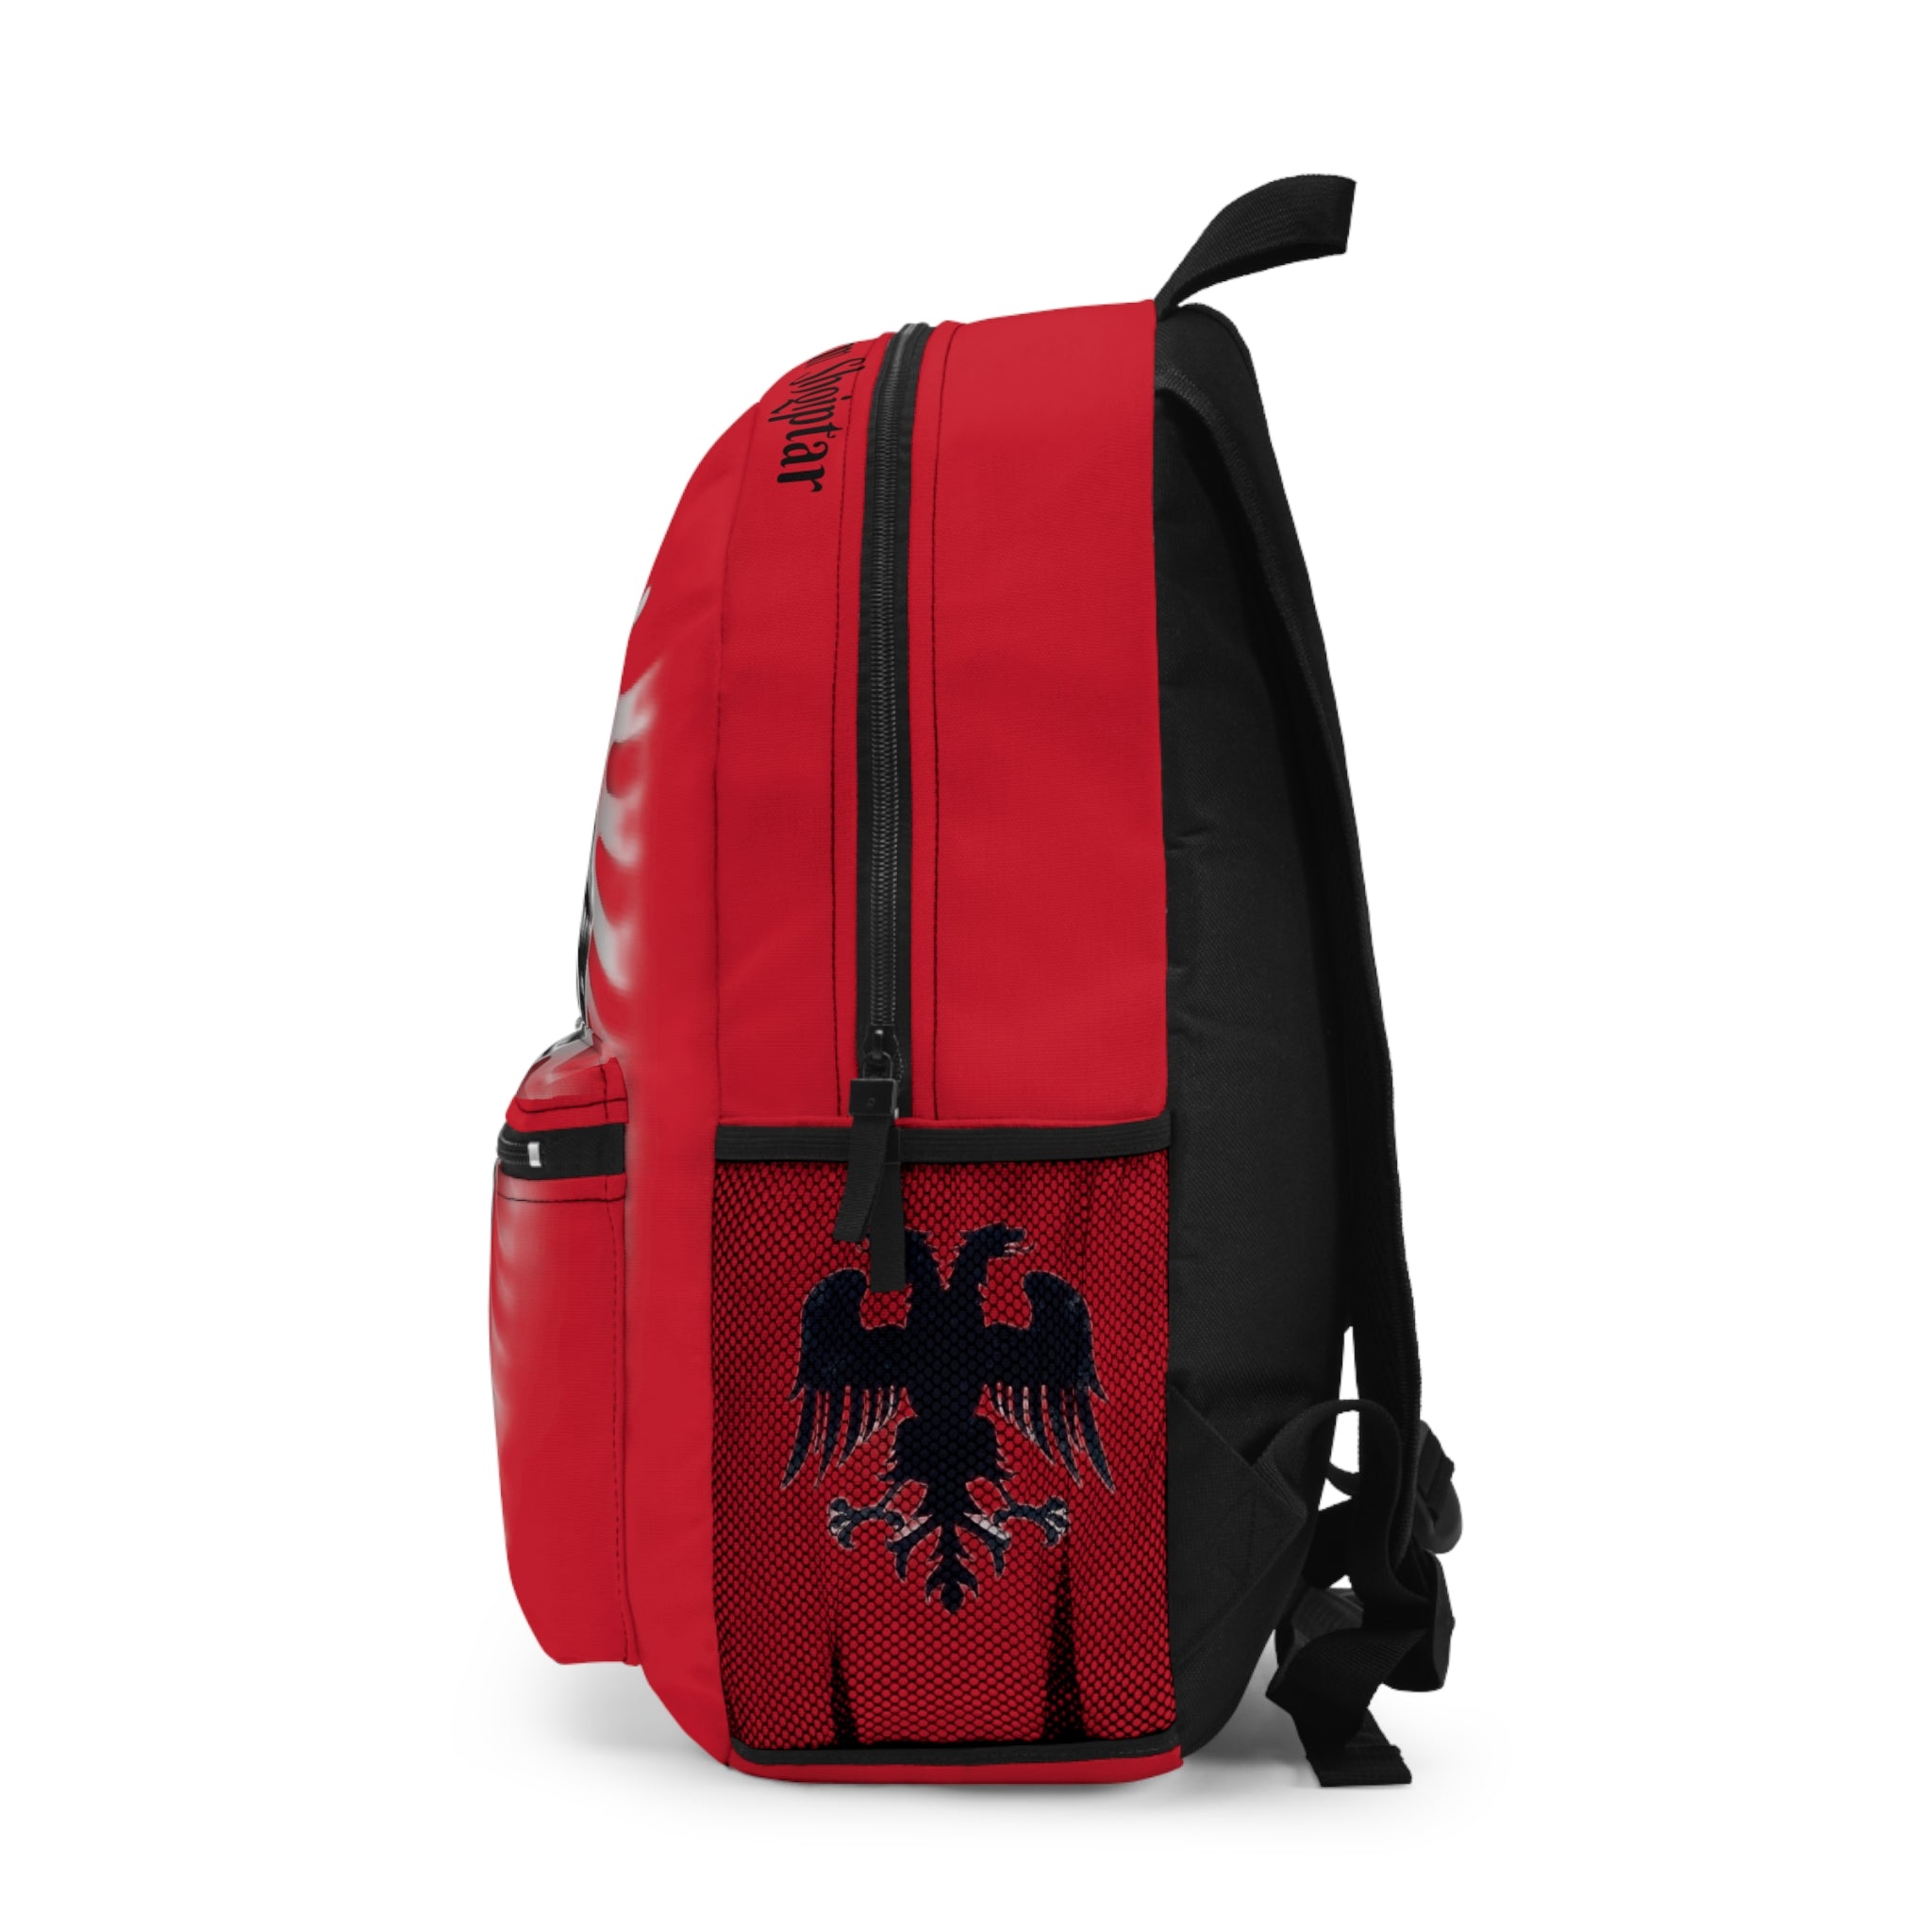 Backpack Albania  -Jam Krenar qe jam Shqiptar